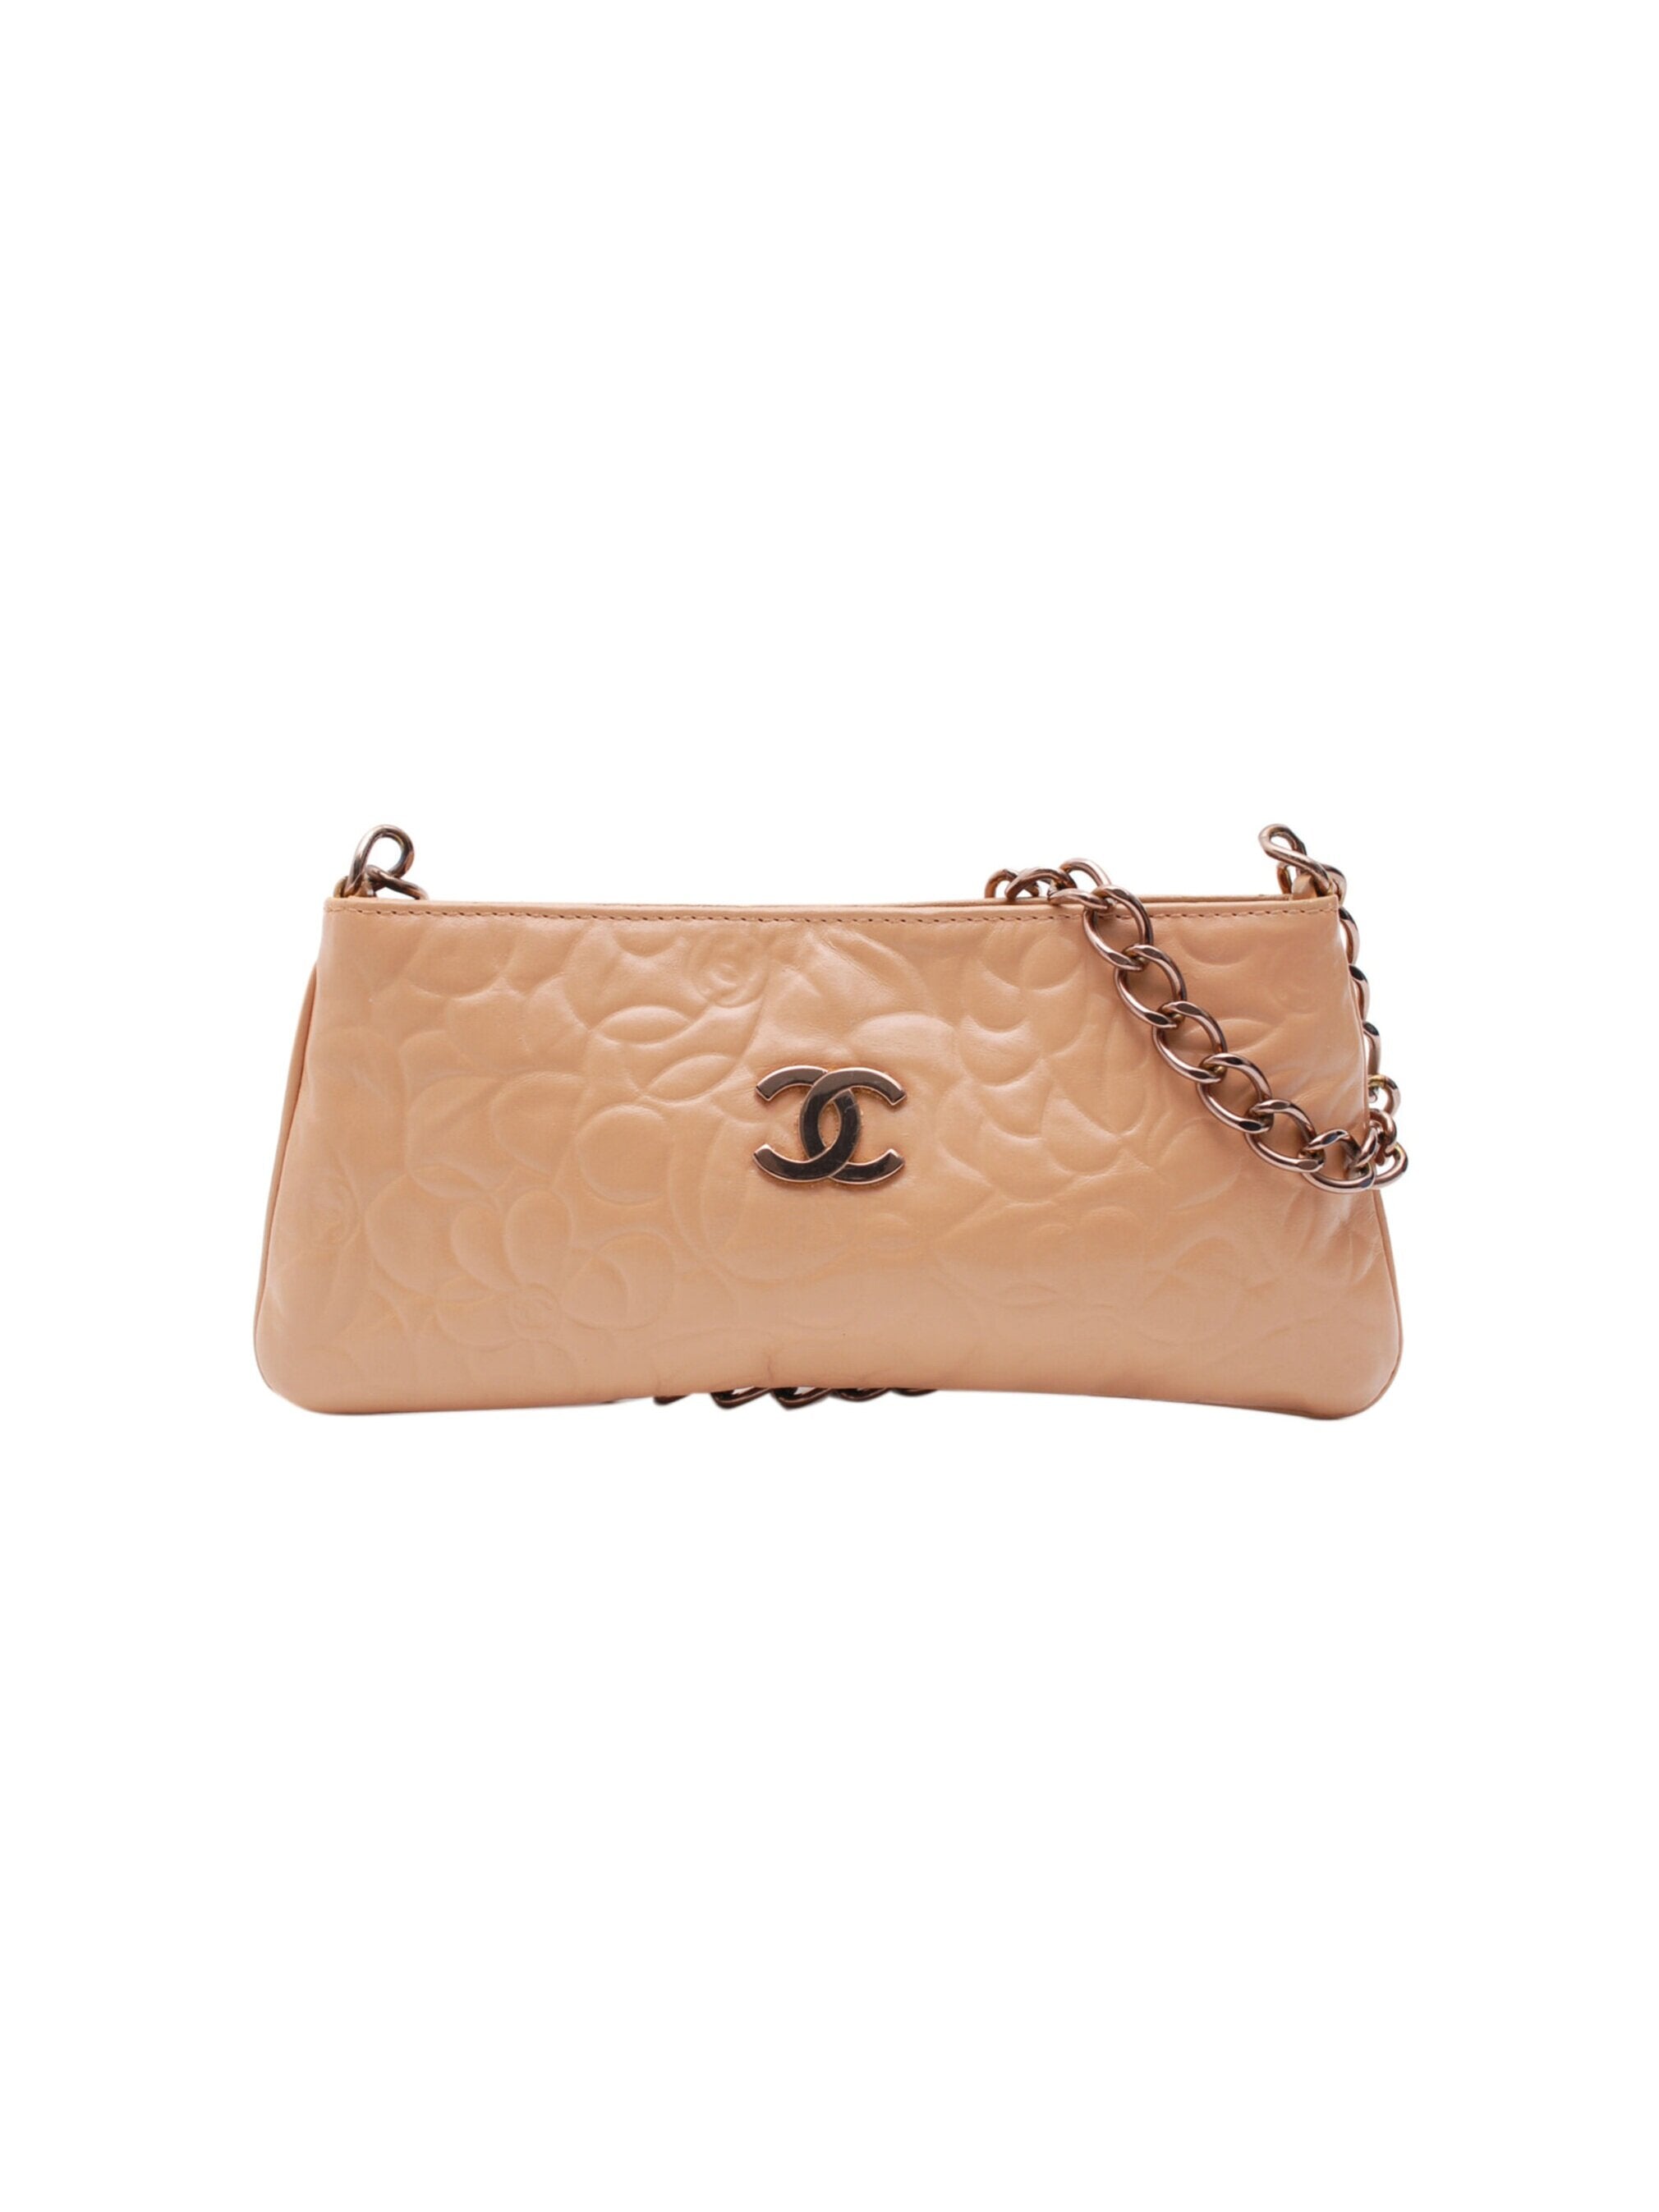 Chanel 2000s Pink Camellia Mini Shoulder Bag